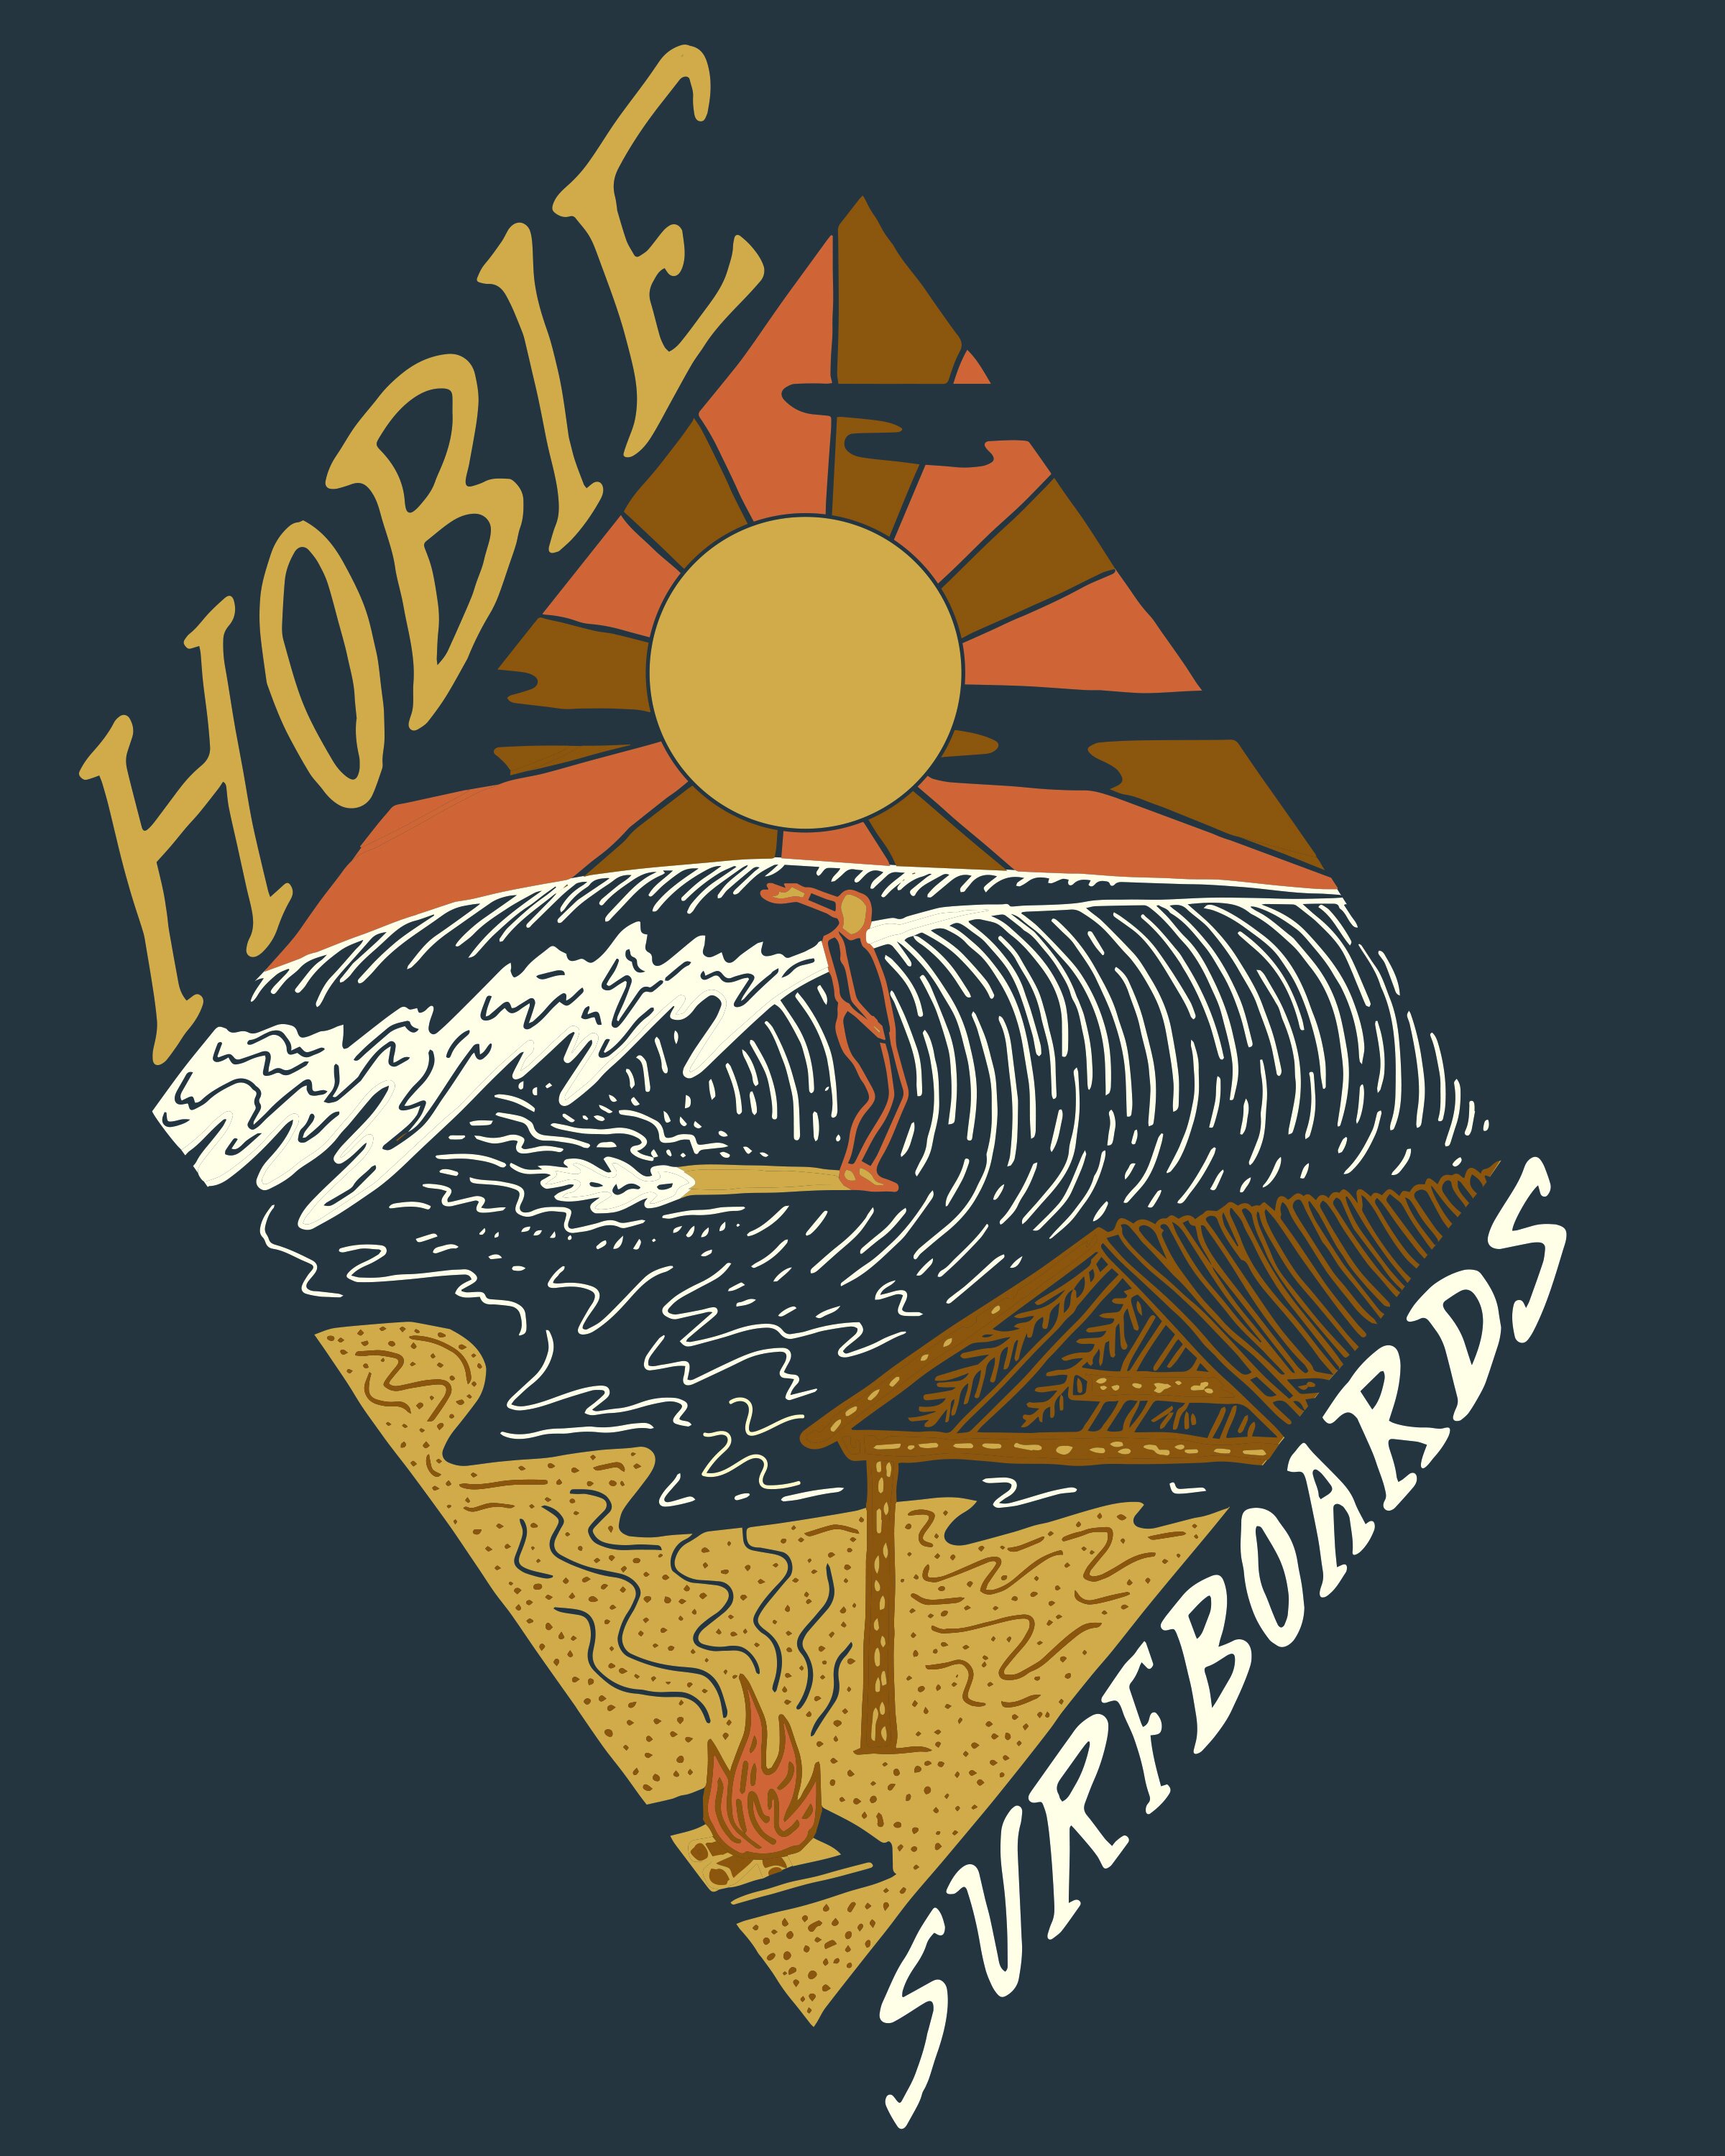 hobie surfboards-1 copy.jpg